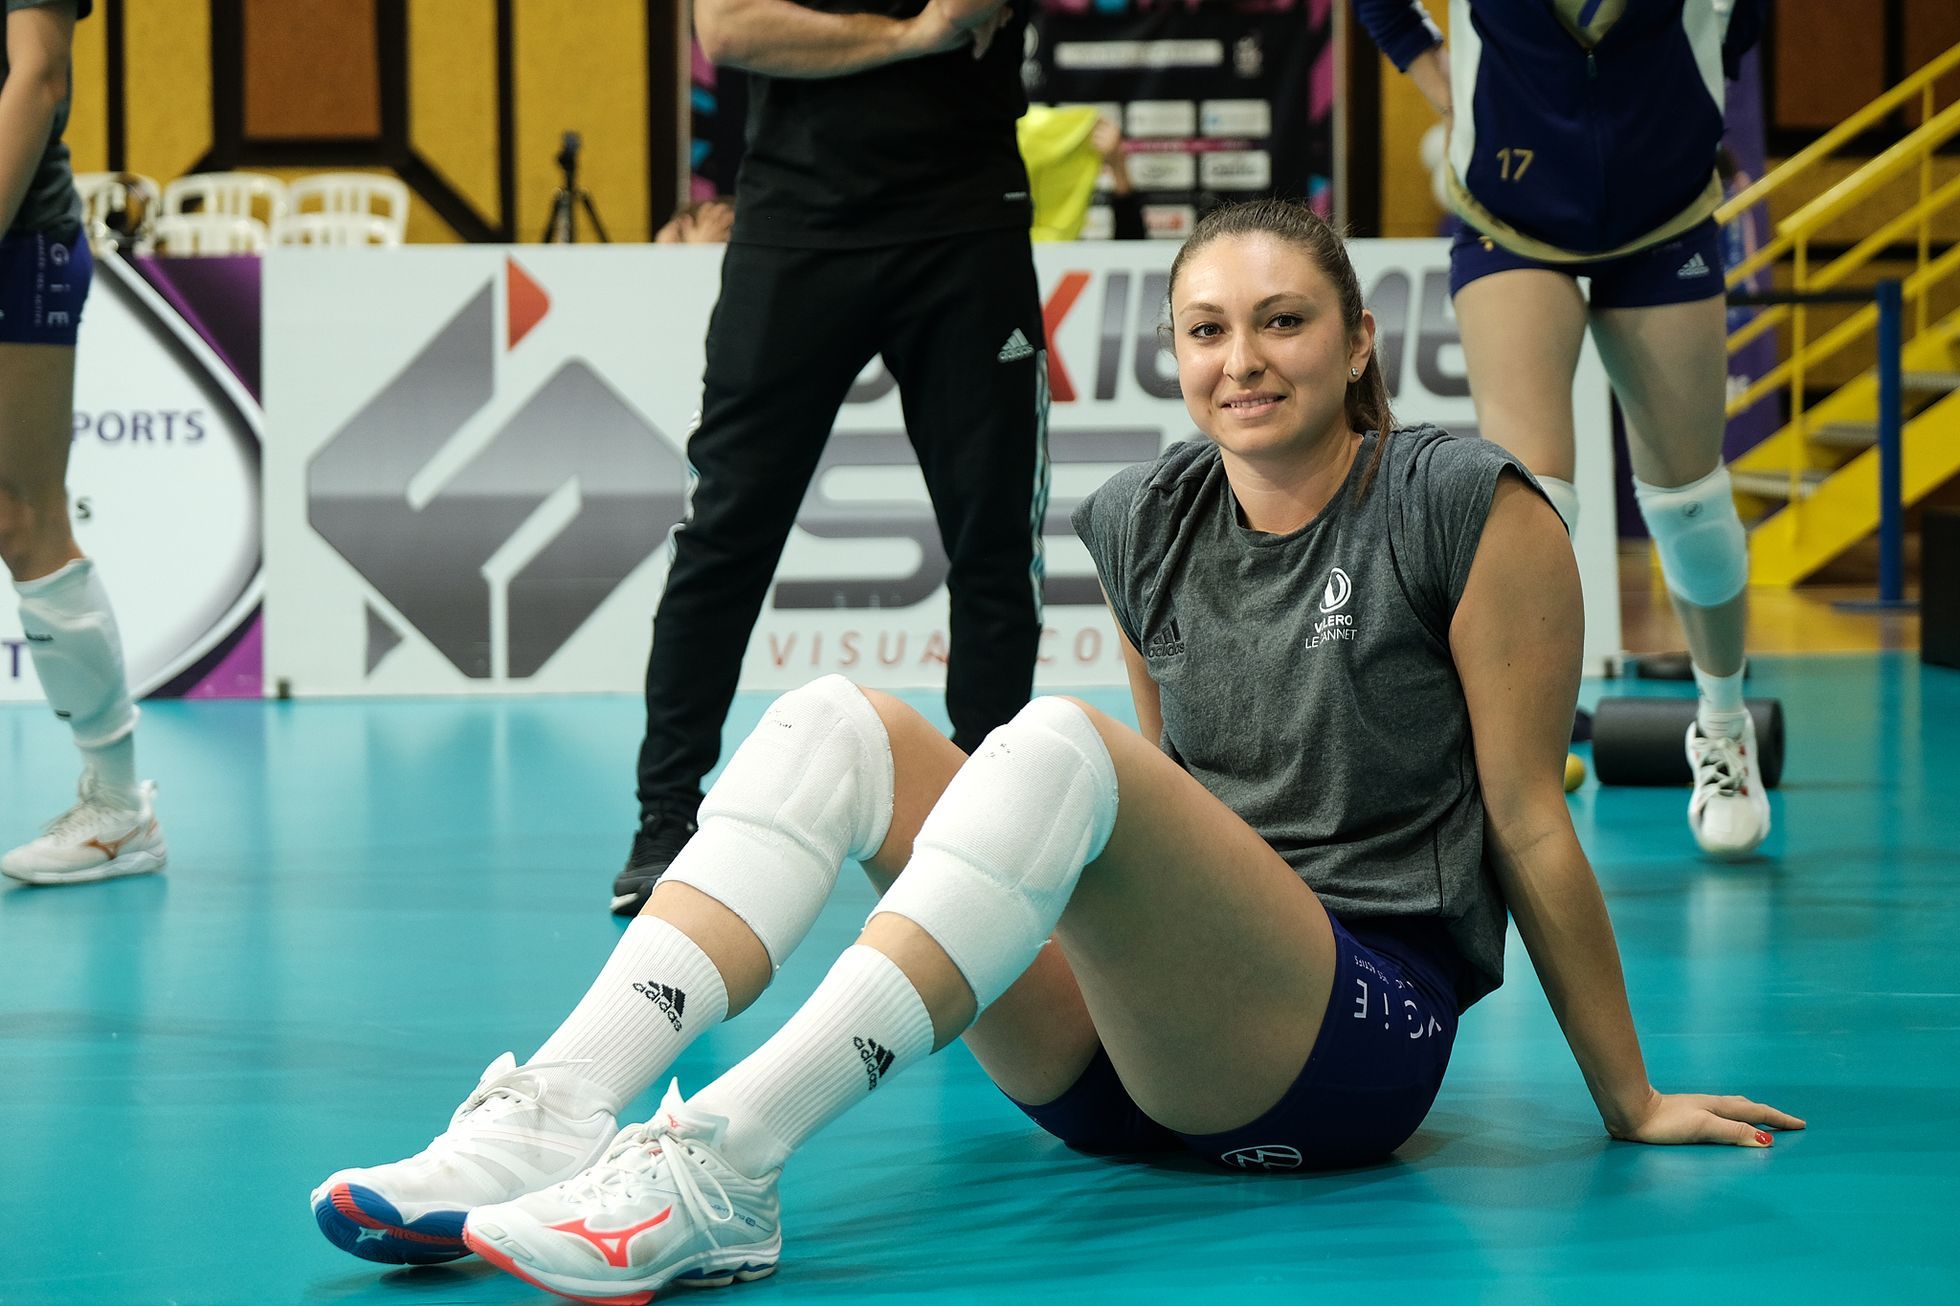 Dopo la vittoria in Francia, Mlejnková è andato in Turchia, il sogno dell’Italia e delle Olimpiadi